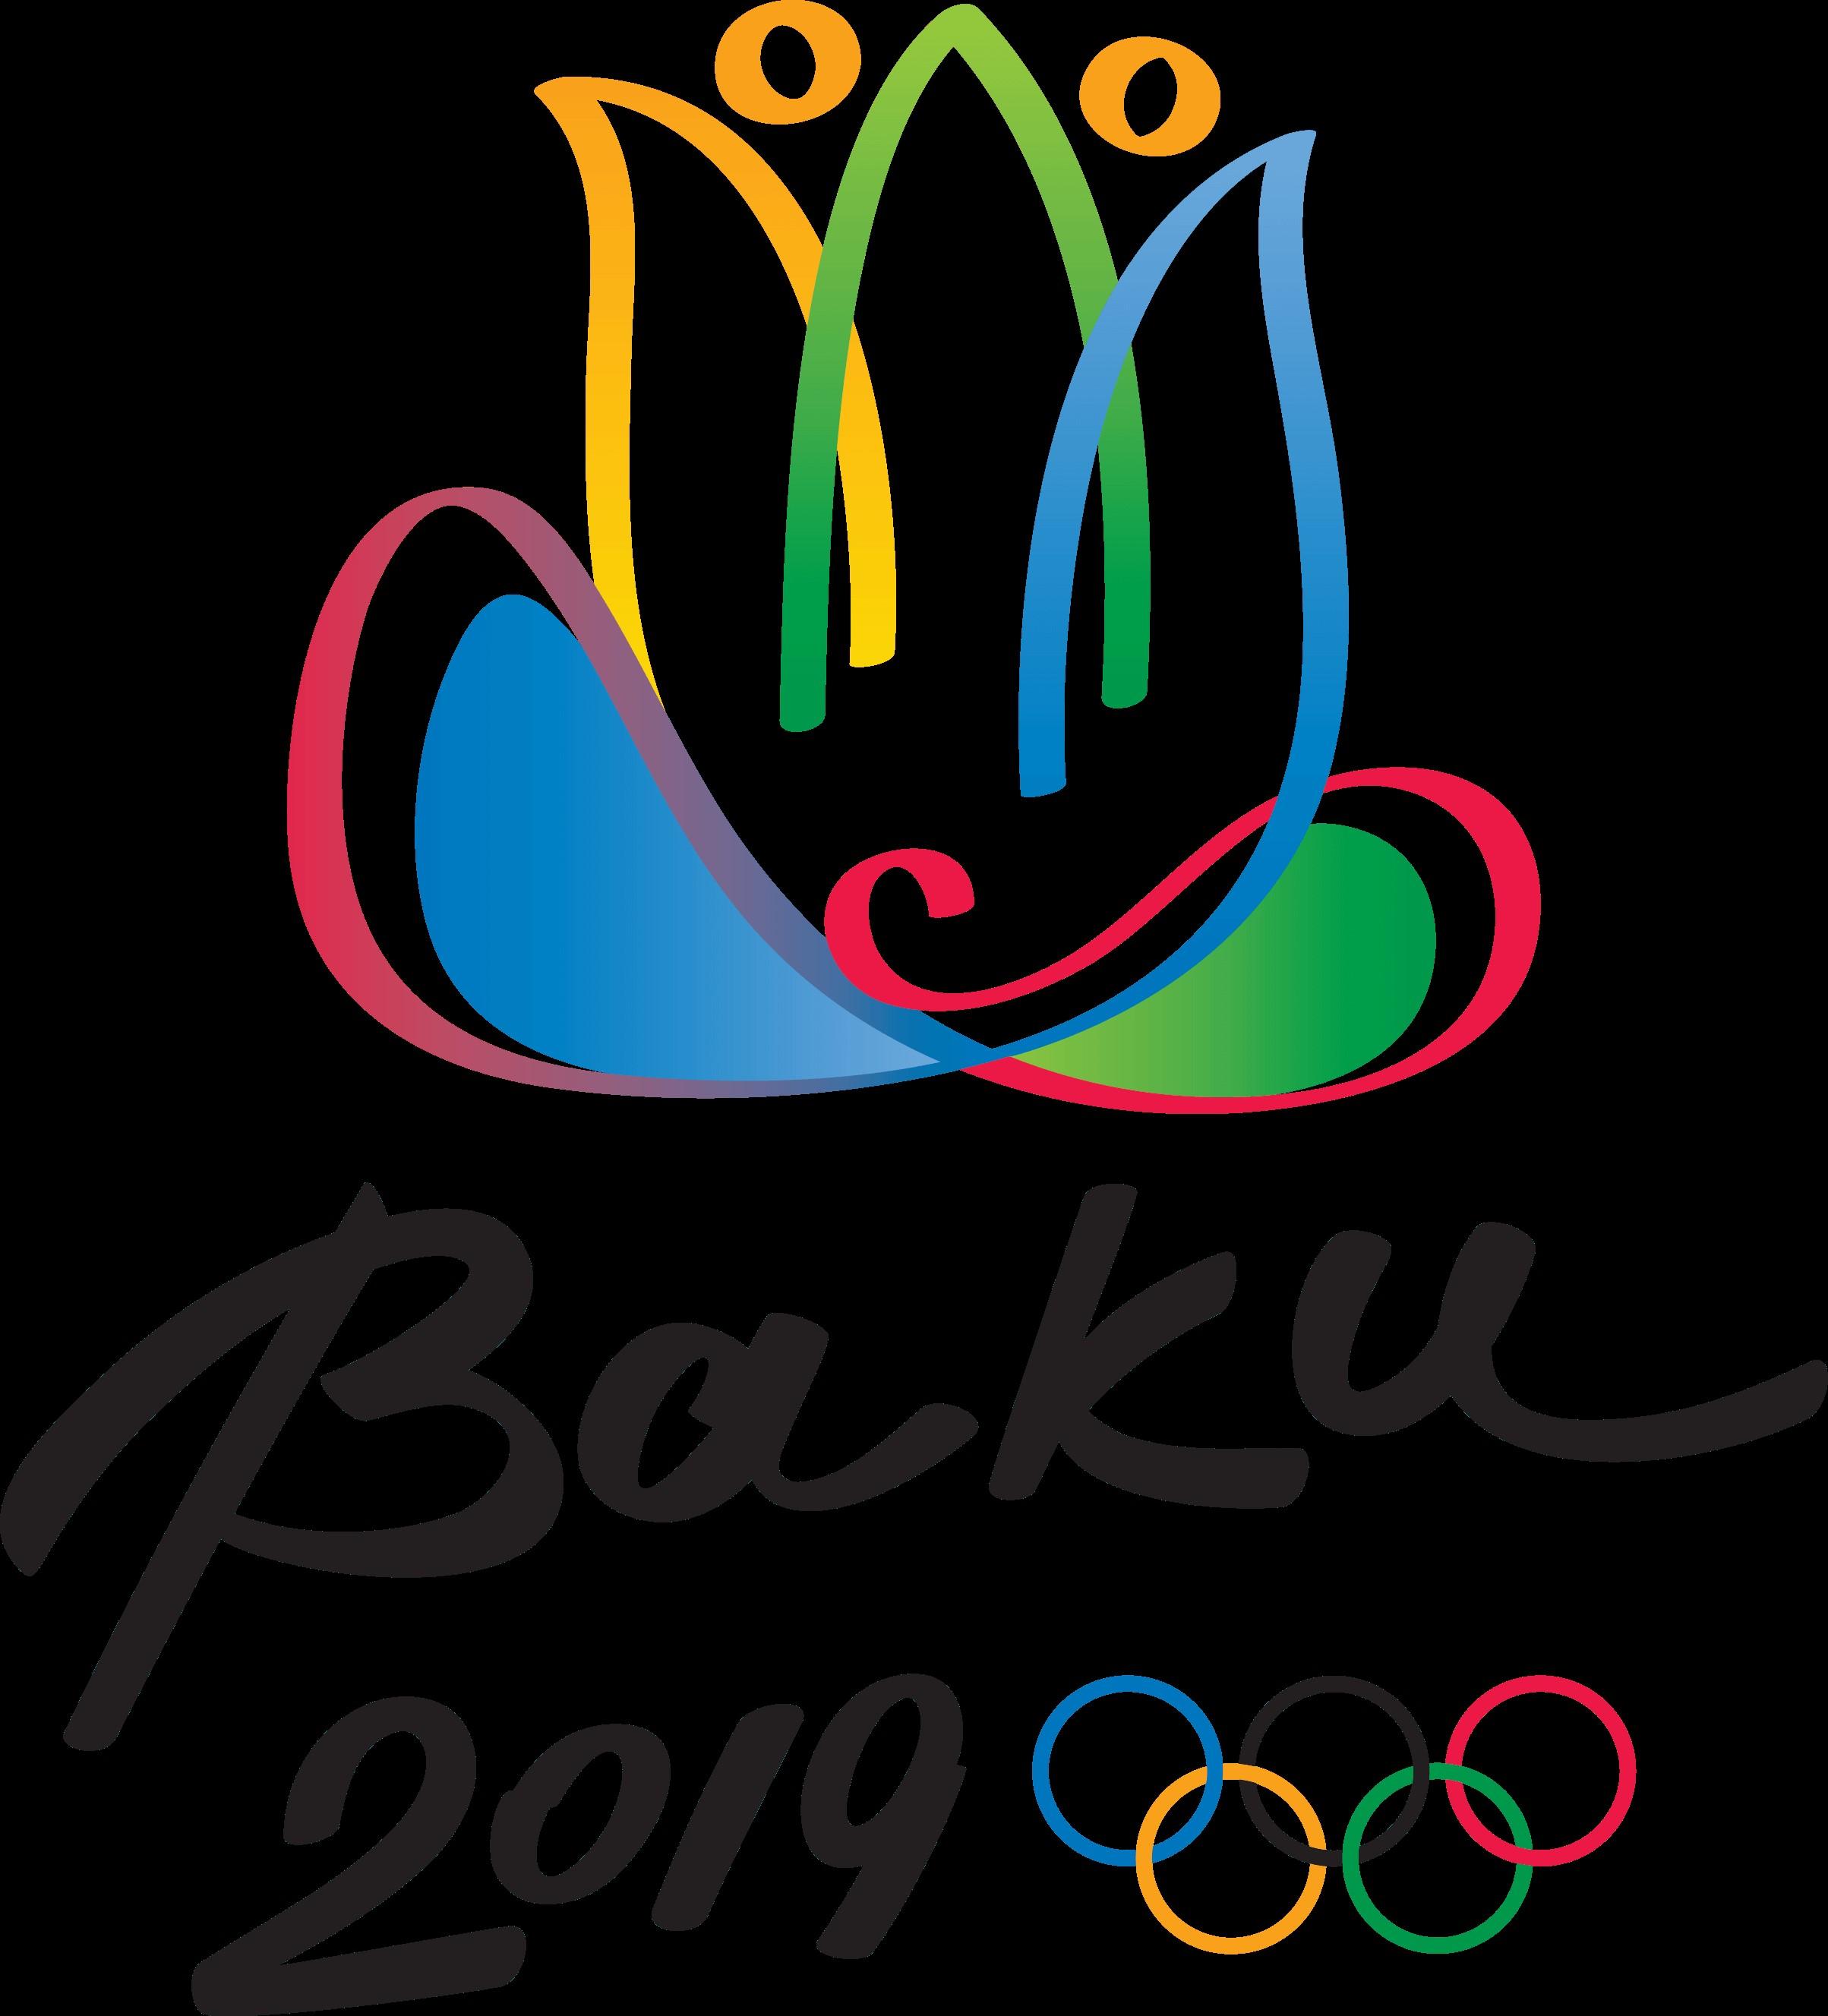 2019-eyof-baku